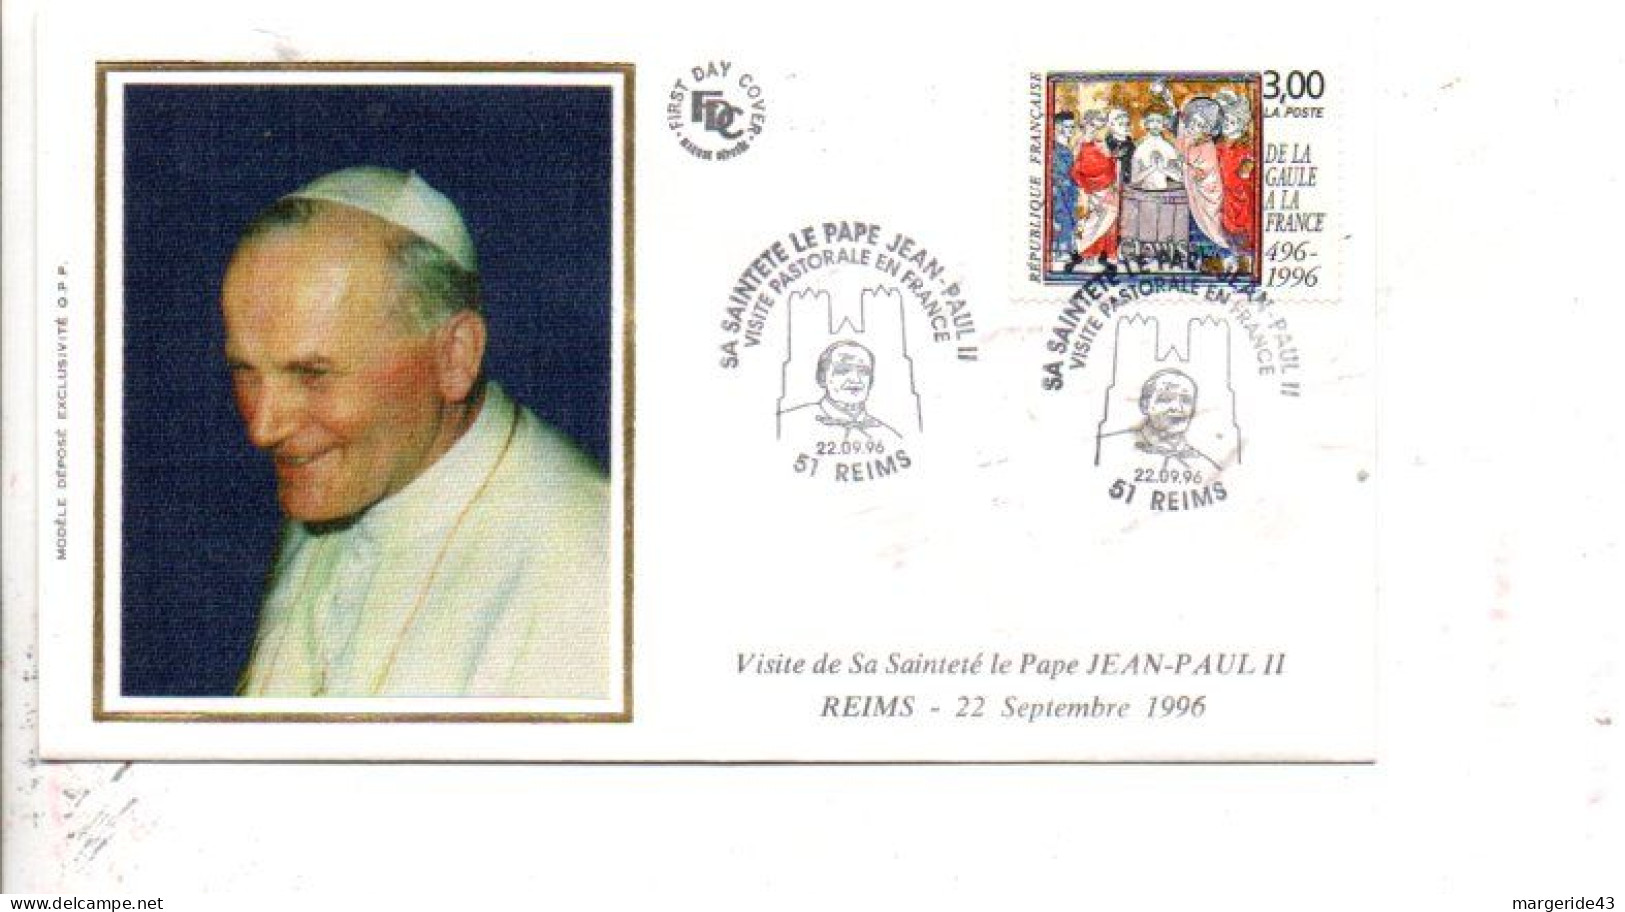 VISITE DU PAPE JEAN PAUL II à REIMS 1996 - Cachets Commémoratifs